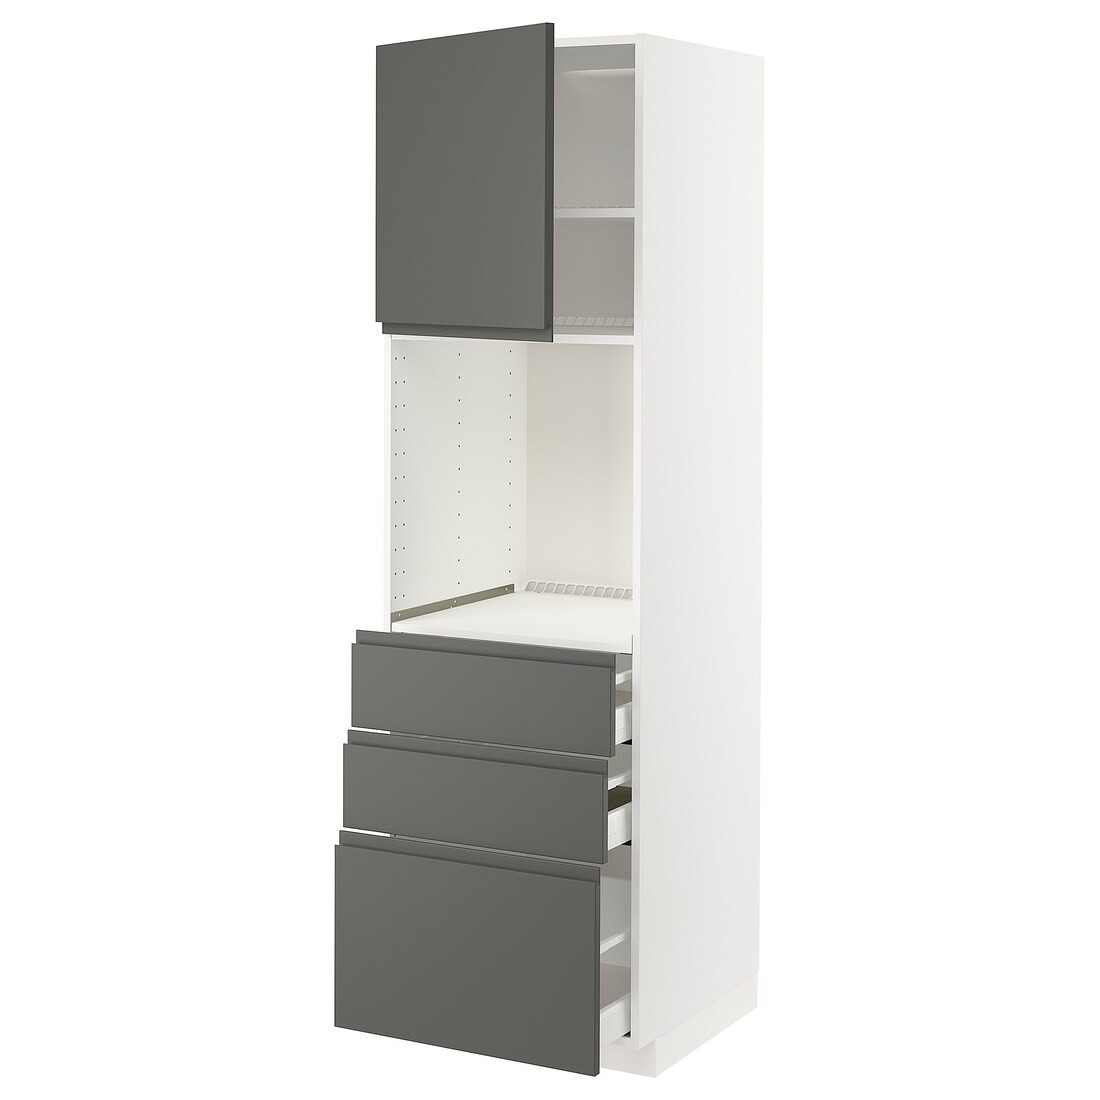 METOD МЕТОД / MAXIMERA МАКСИМЕРА Высокий шкаф для духовки, белый / Voxtorp темно-серый, 60x60x200 см